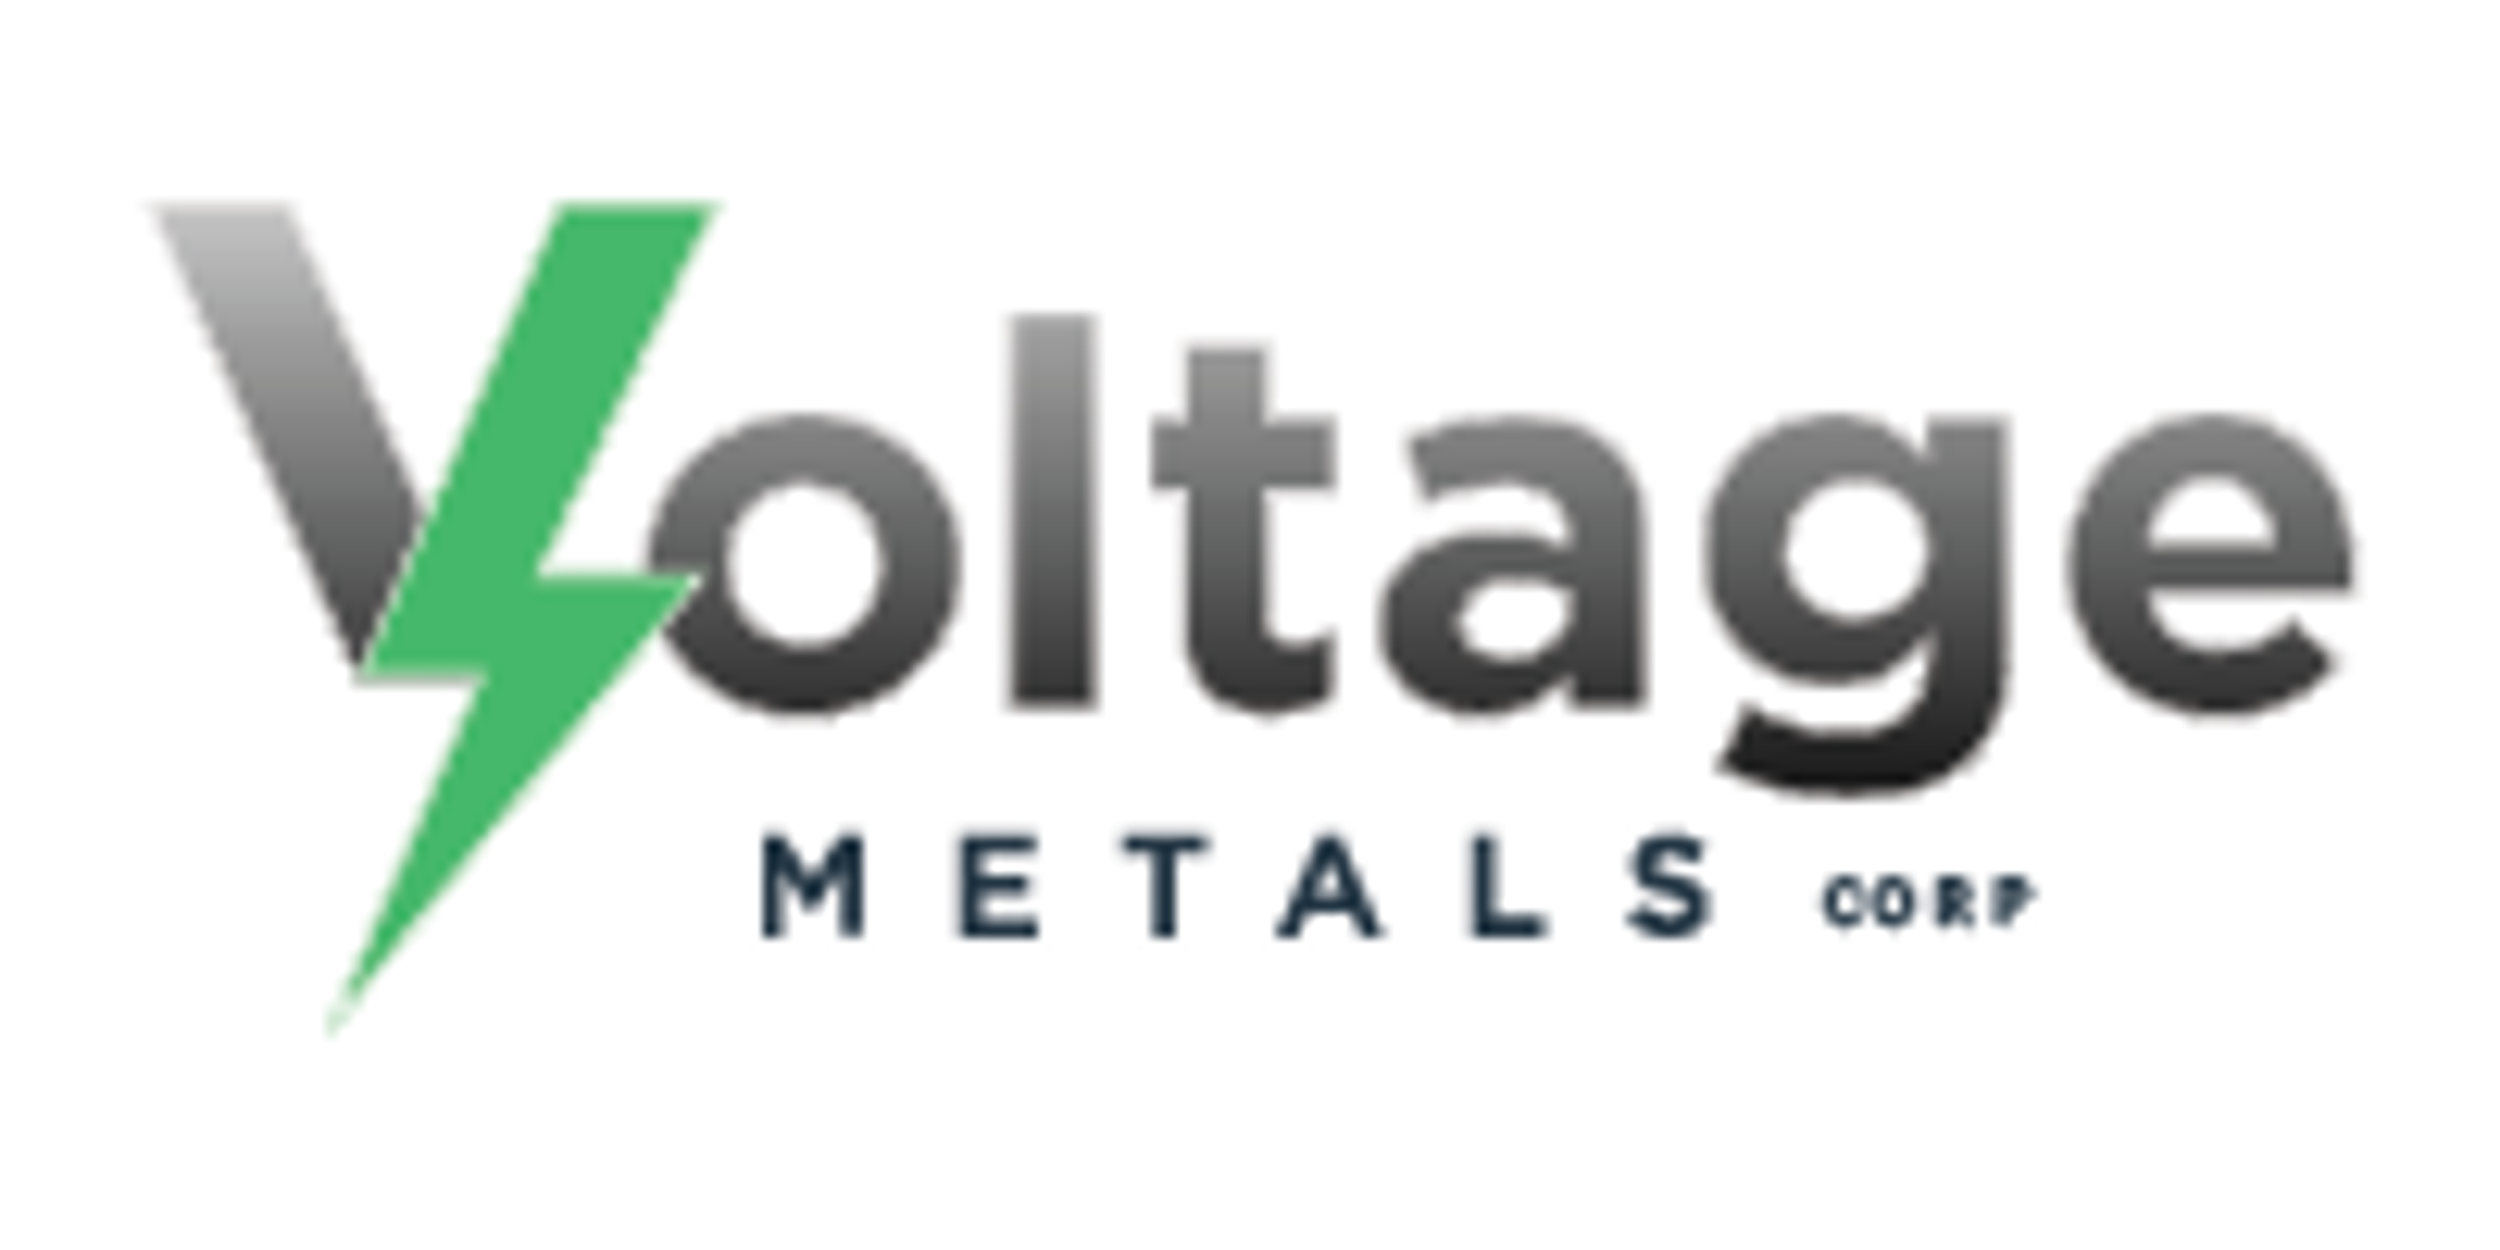 Voltage Metals